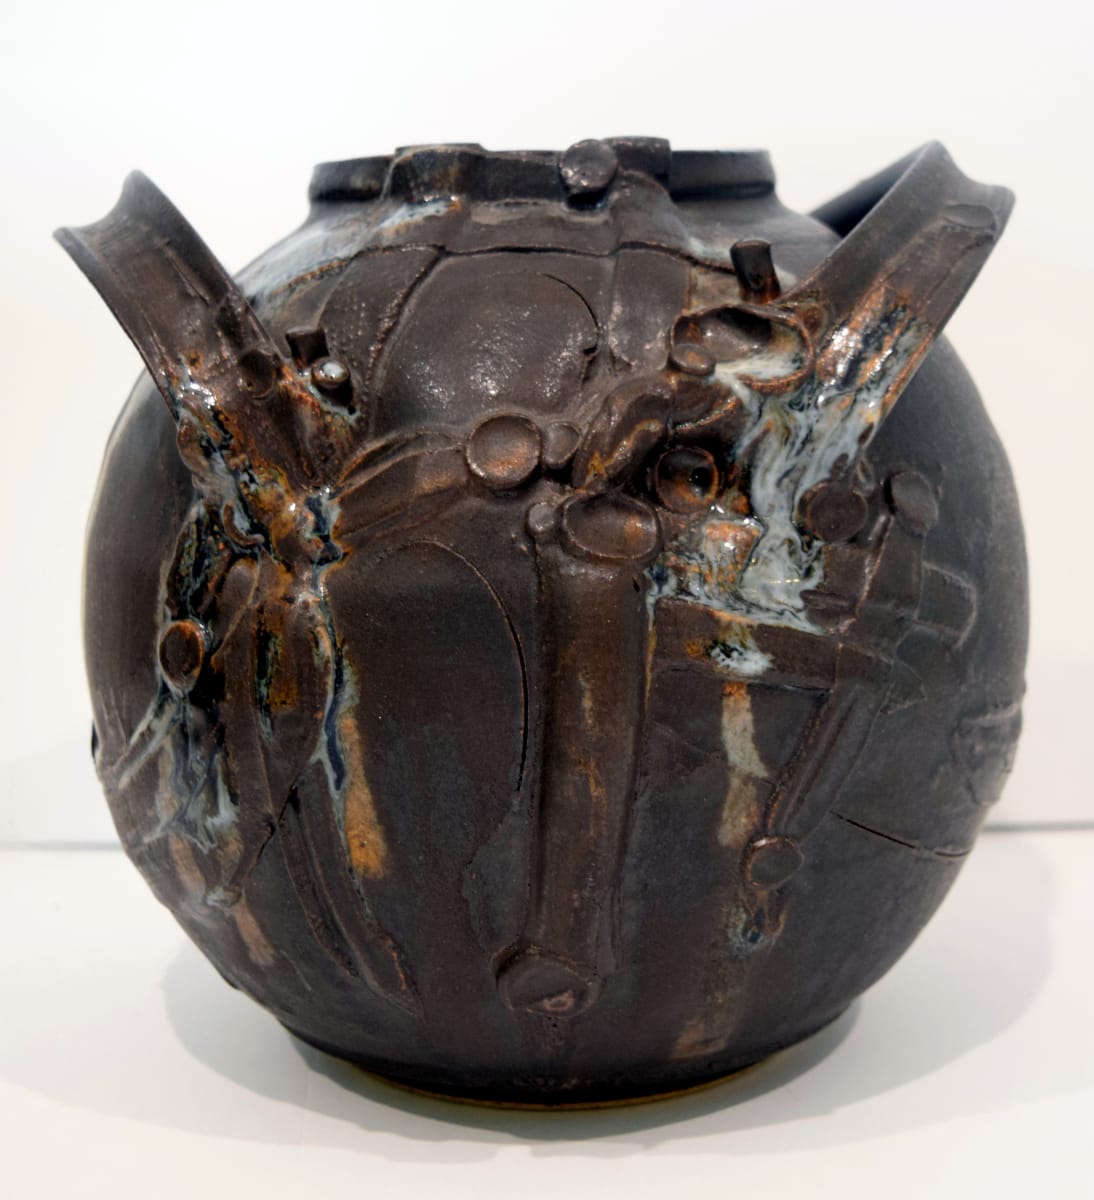 Spherical 2-Handled Vessel by John Heller  Image: Spherical 2-Handled Vessel, dark glaze